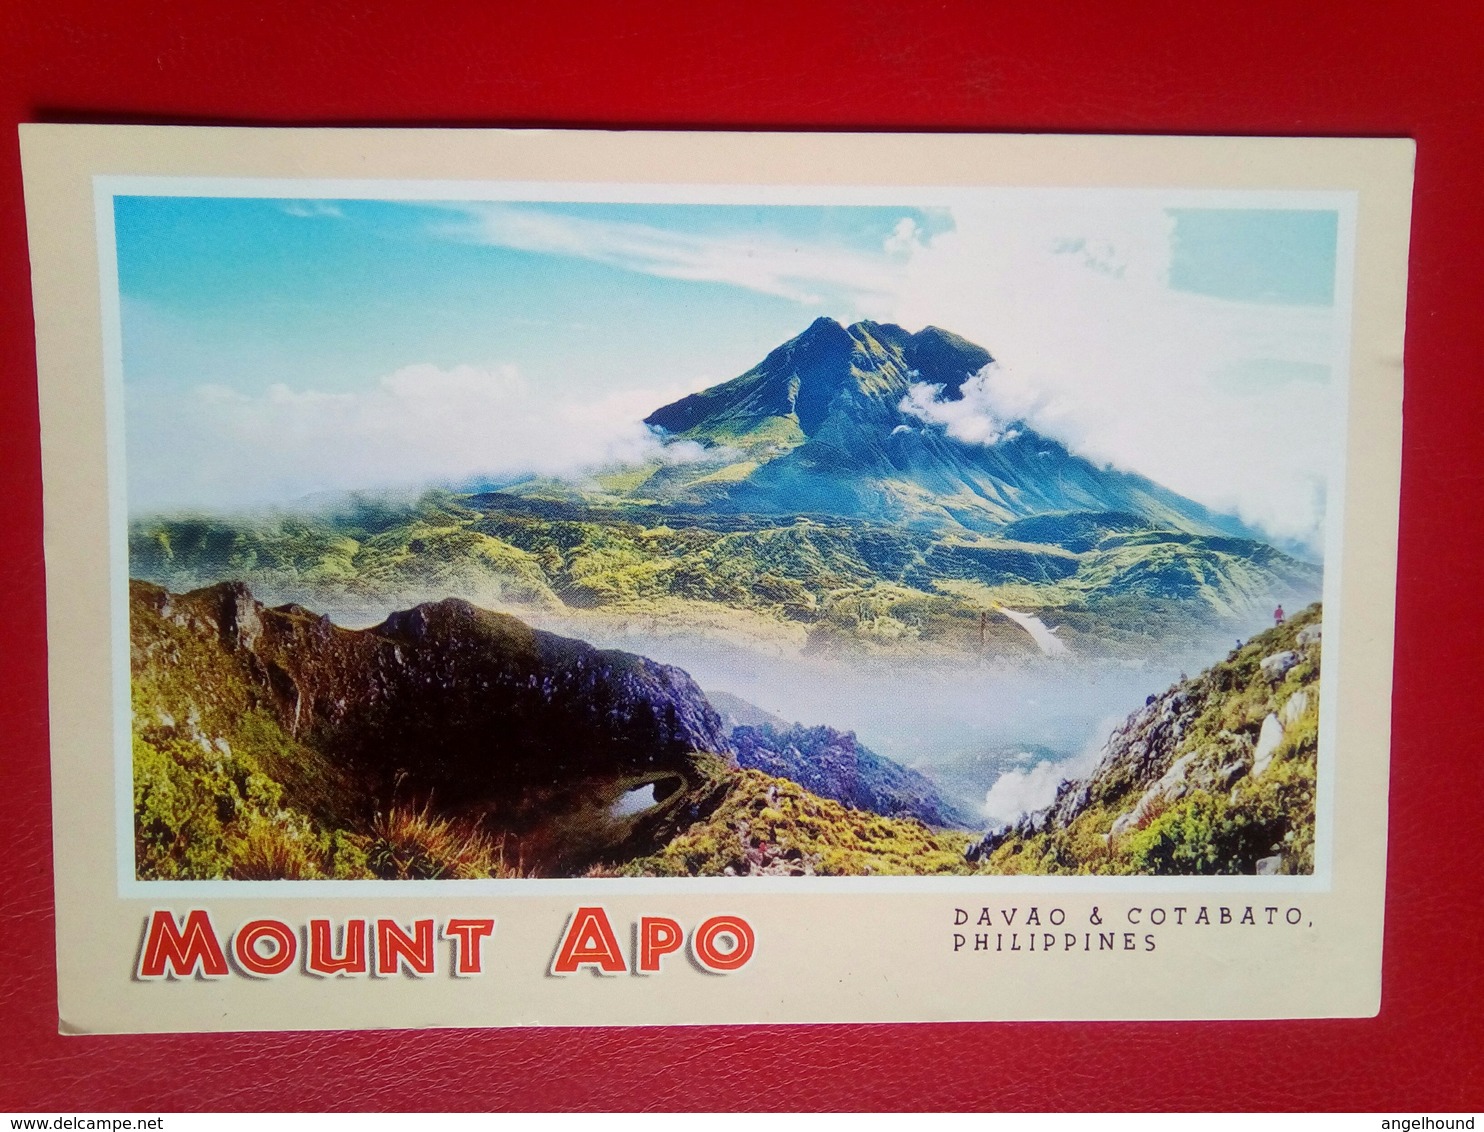 Mount Apo - Philippines